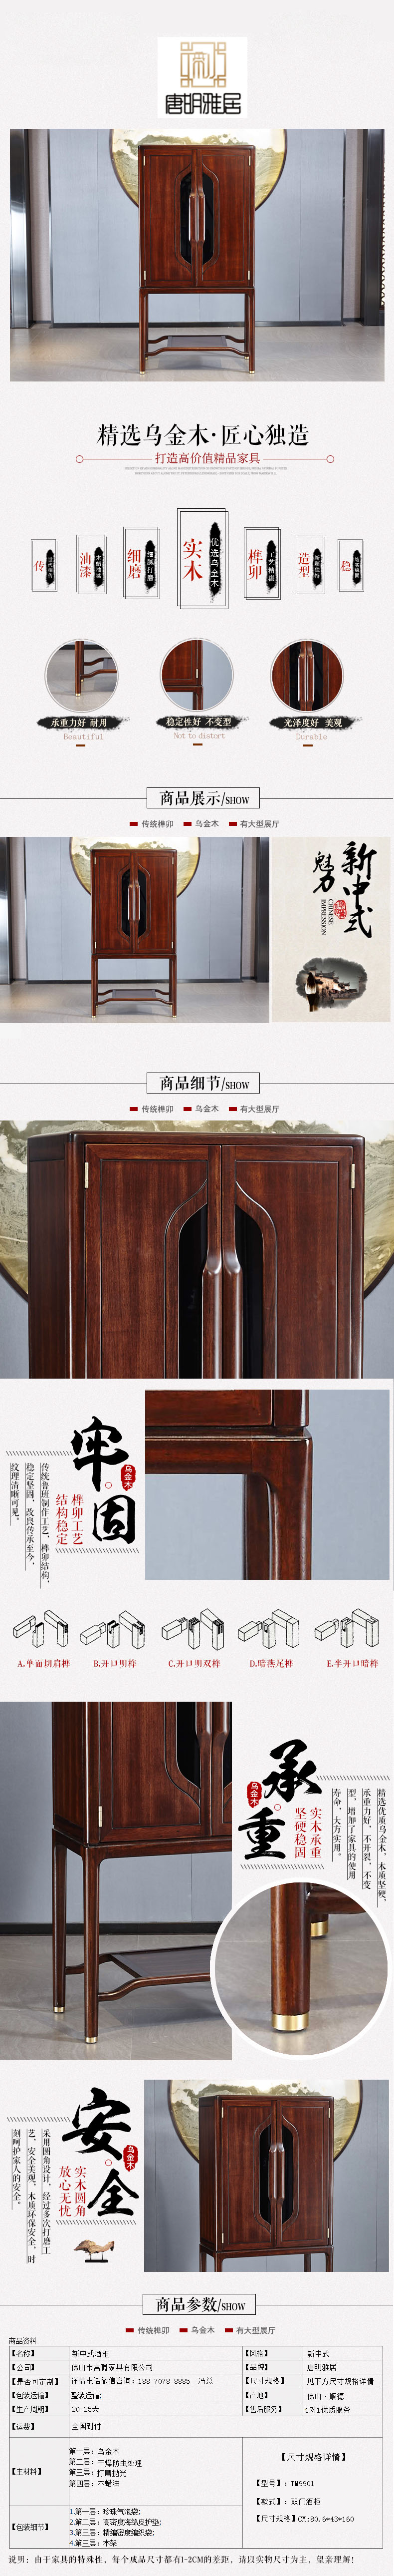 唐明雅居新中式家具